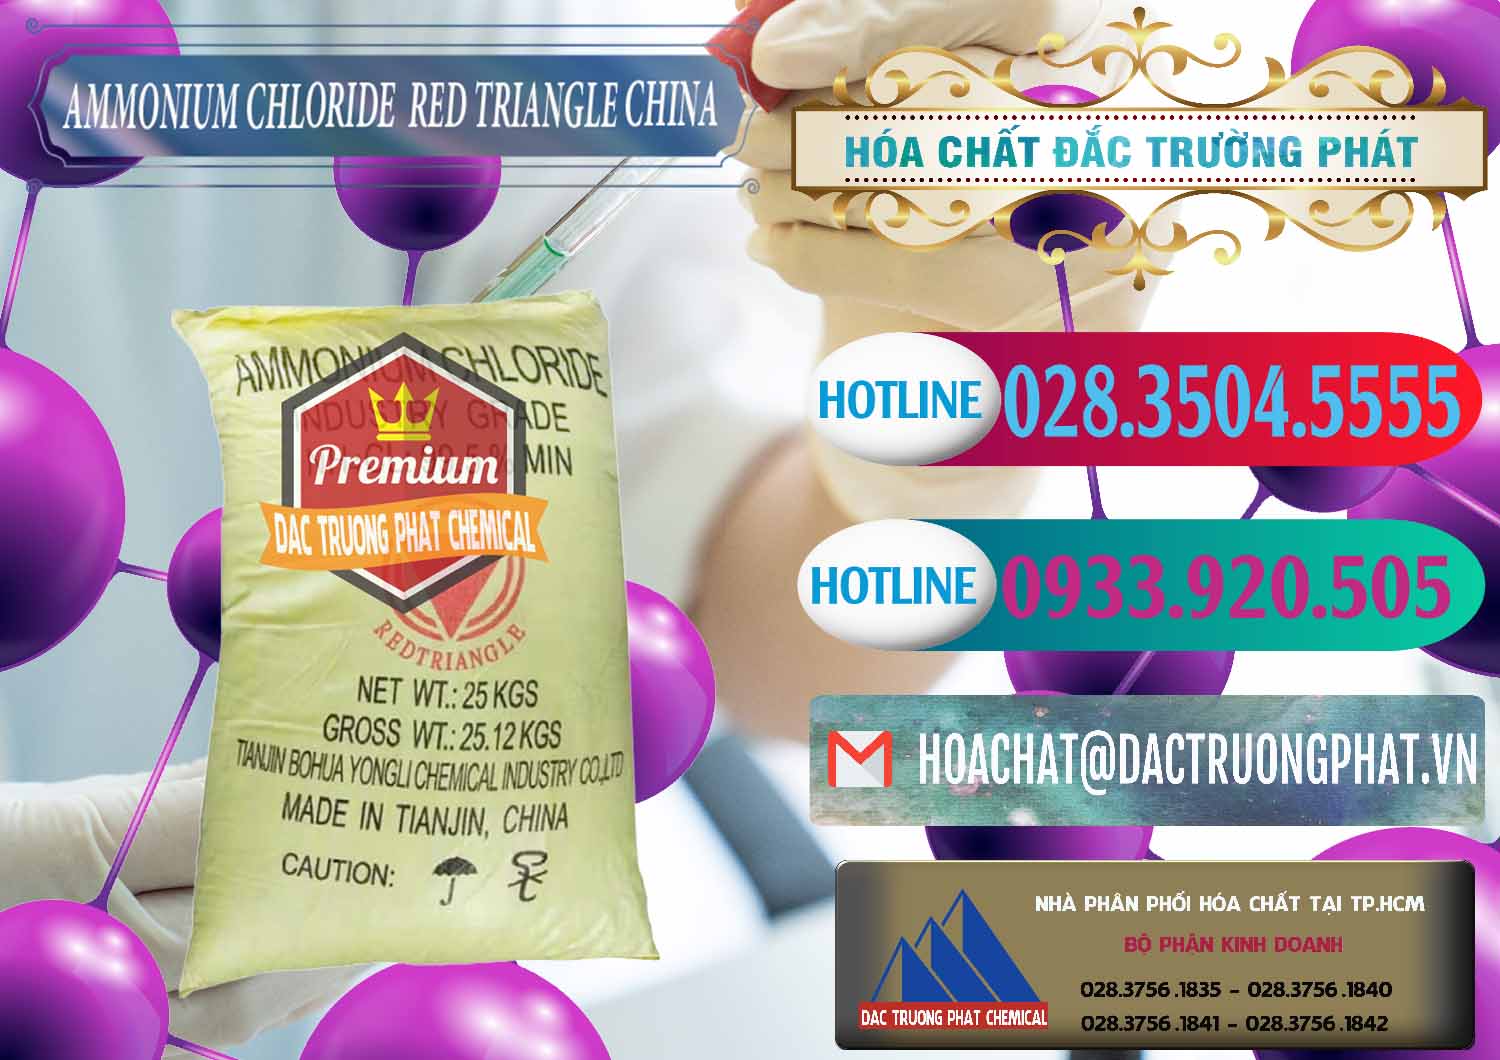 Cty chuyên bán và cung ứng Ammonium Chloride - Muối Lạnh NH4CL Red Triangle Trung Quốc China - 0377 - Cung cấp và phân phối hóa chất tại TP.HCM - truongphat.vn